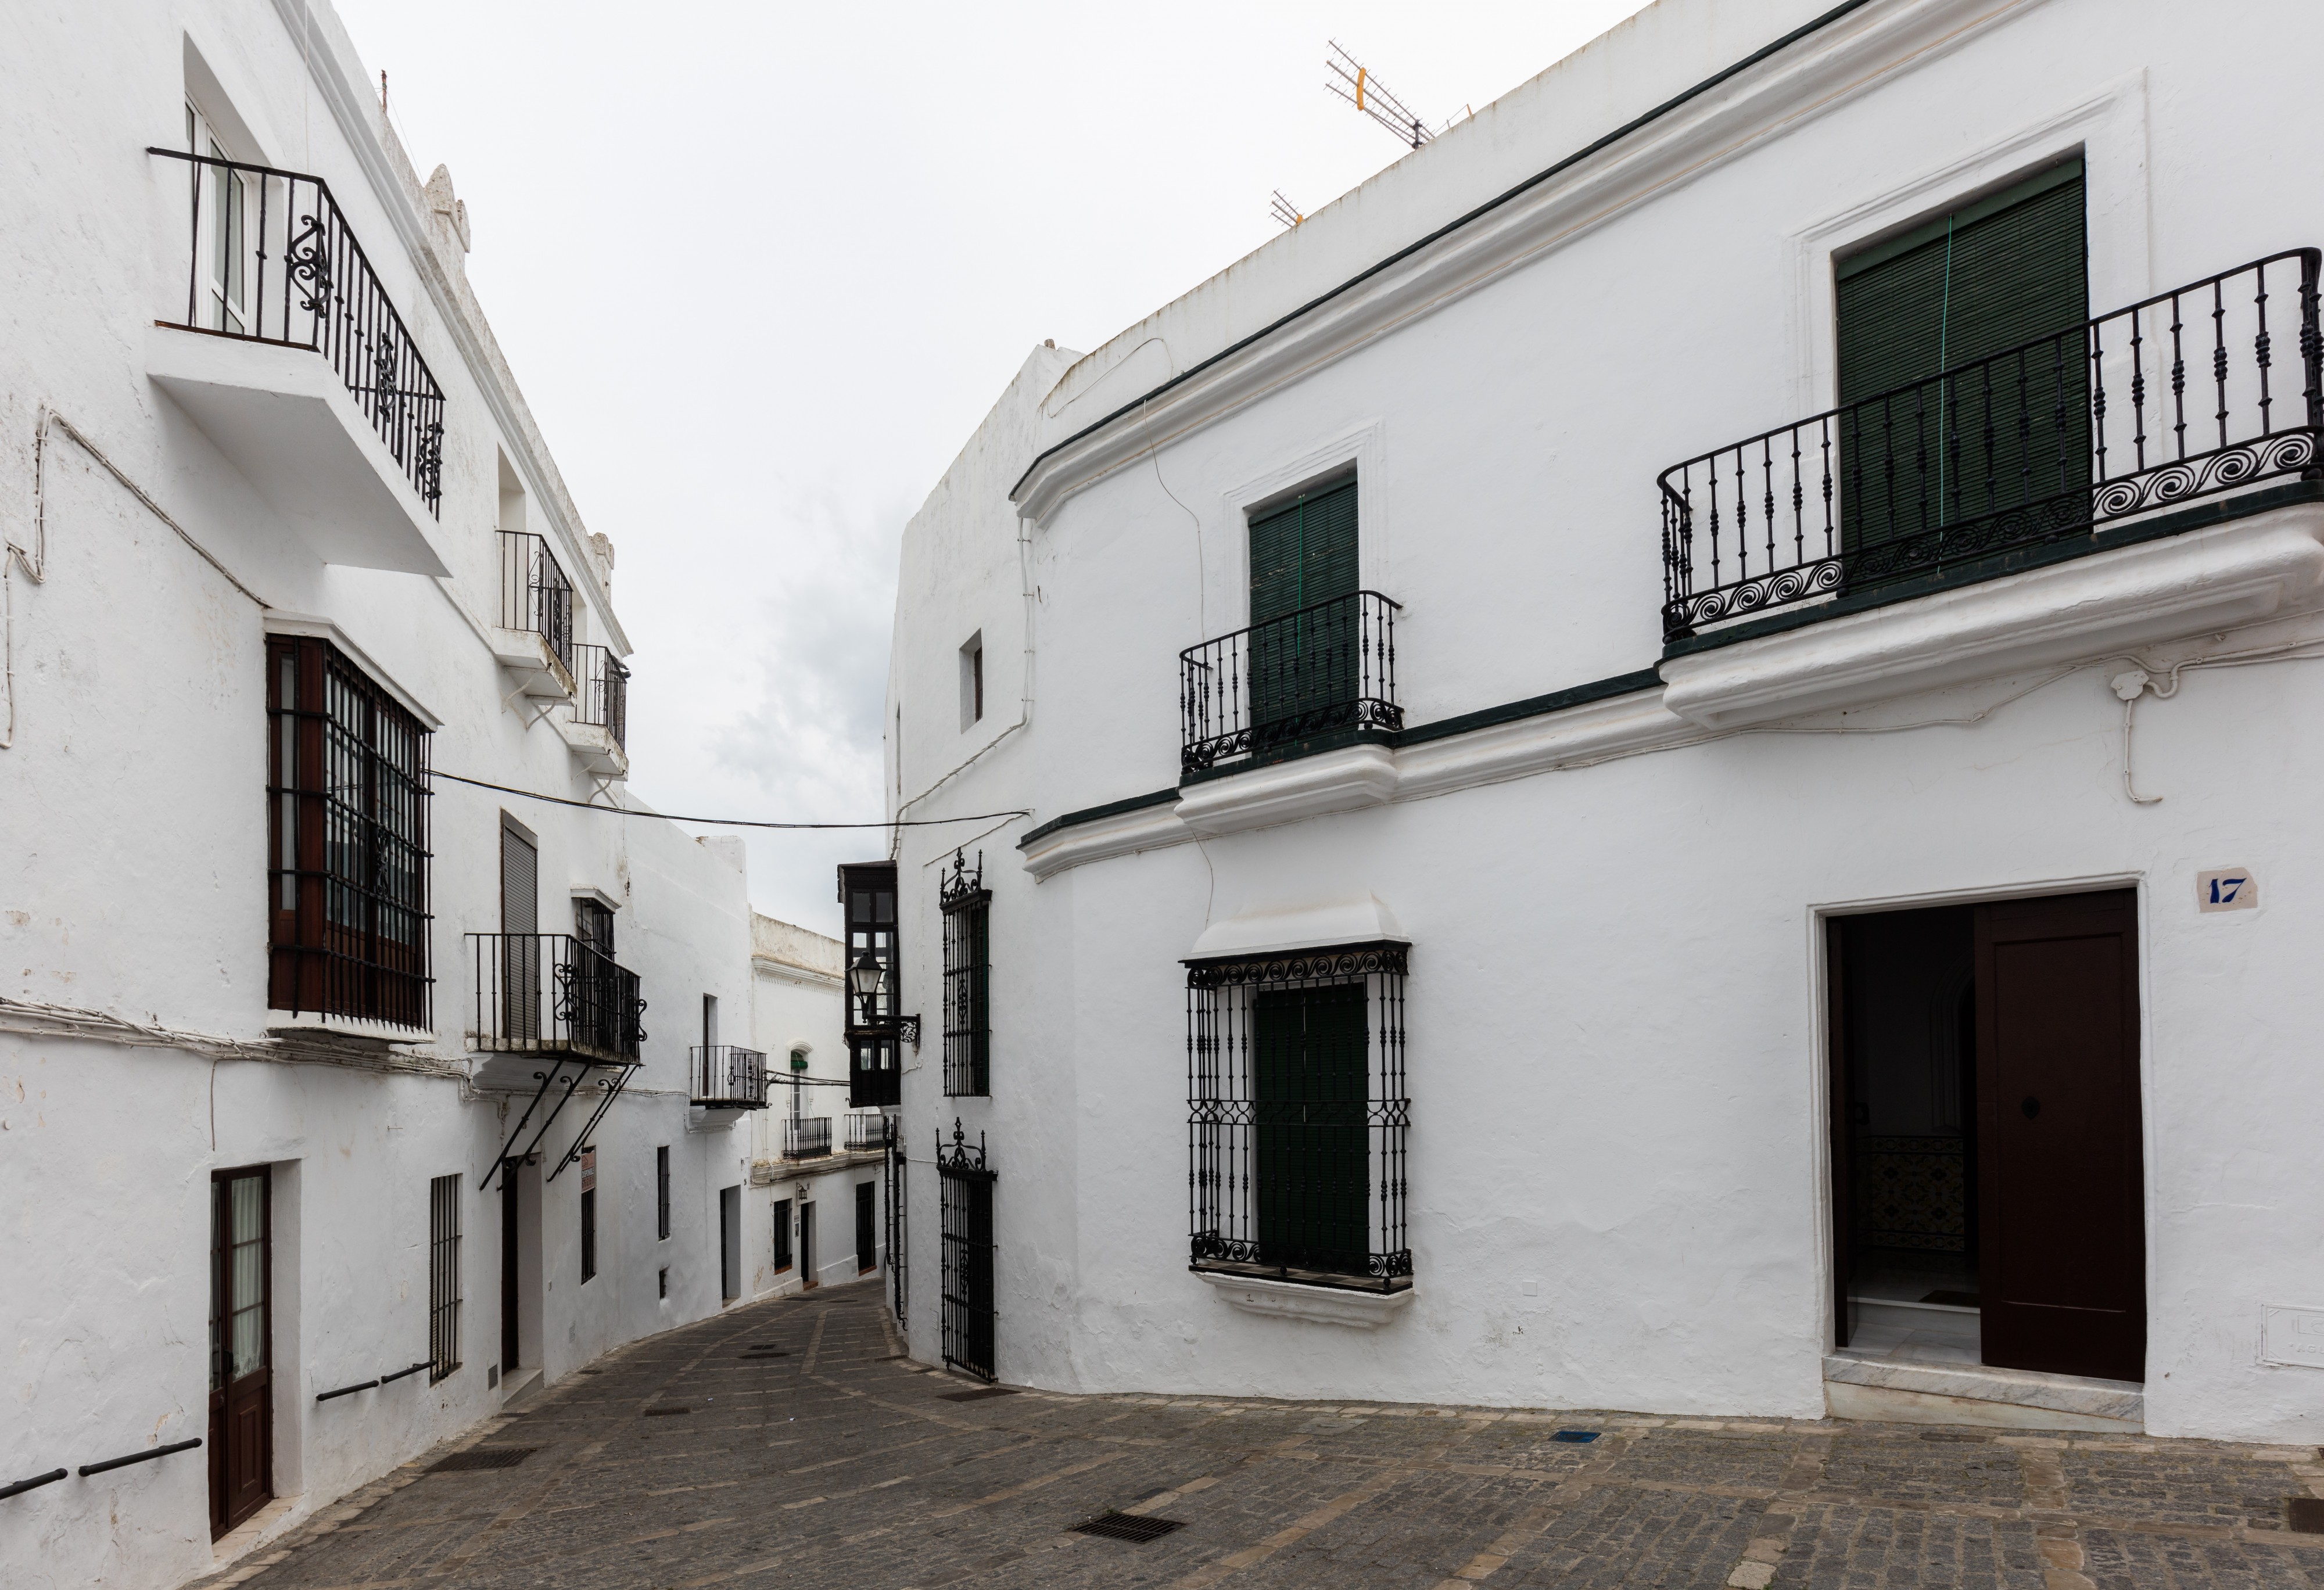 Calle en Vejer de la Frontera, Cádiz, España, 2015-12-09, DD 07